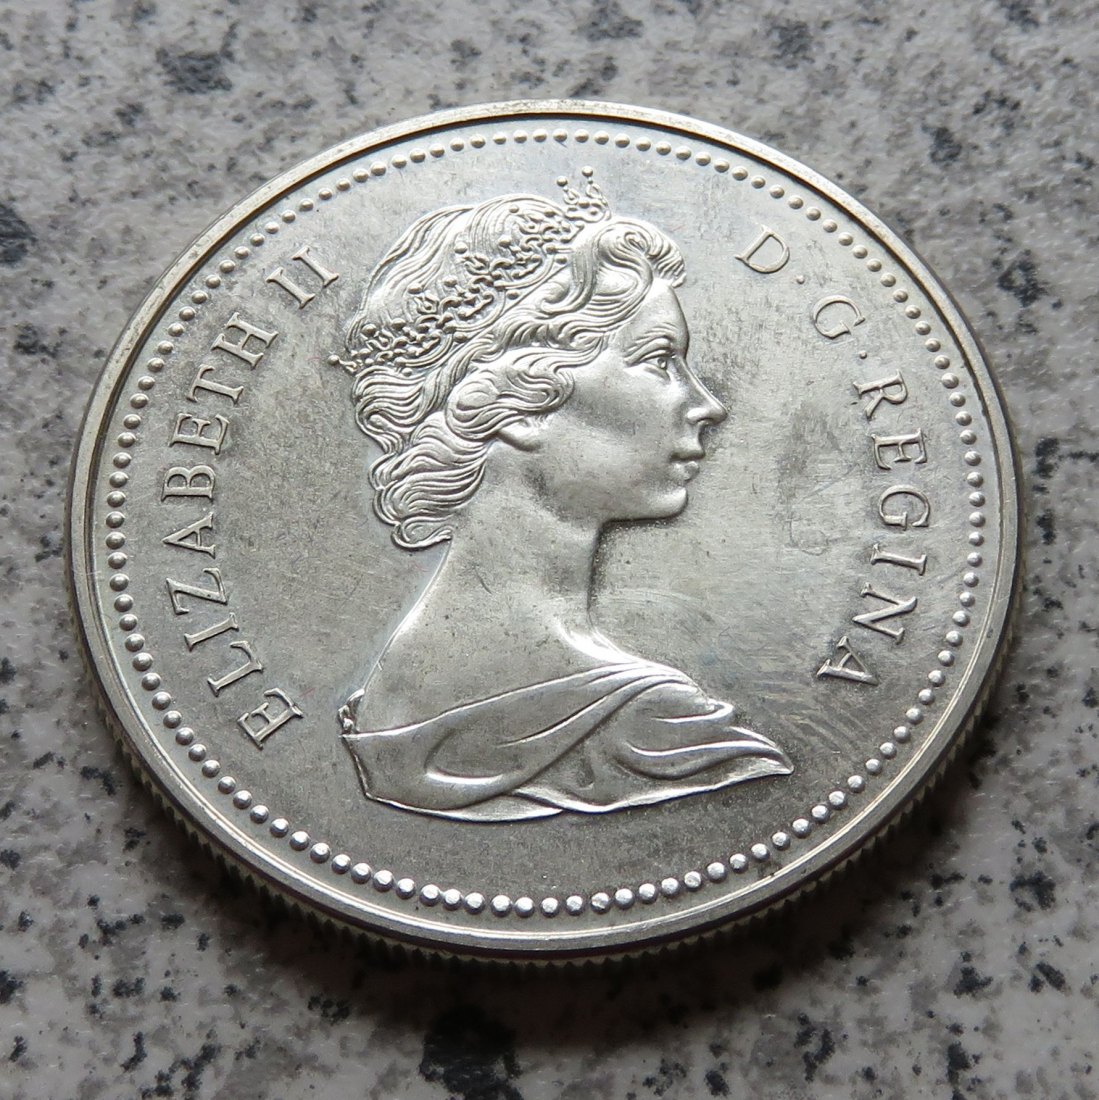  Canada 1 Dollar 1973, Silber   